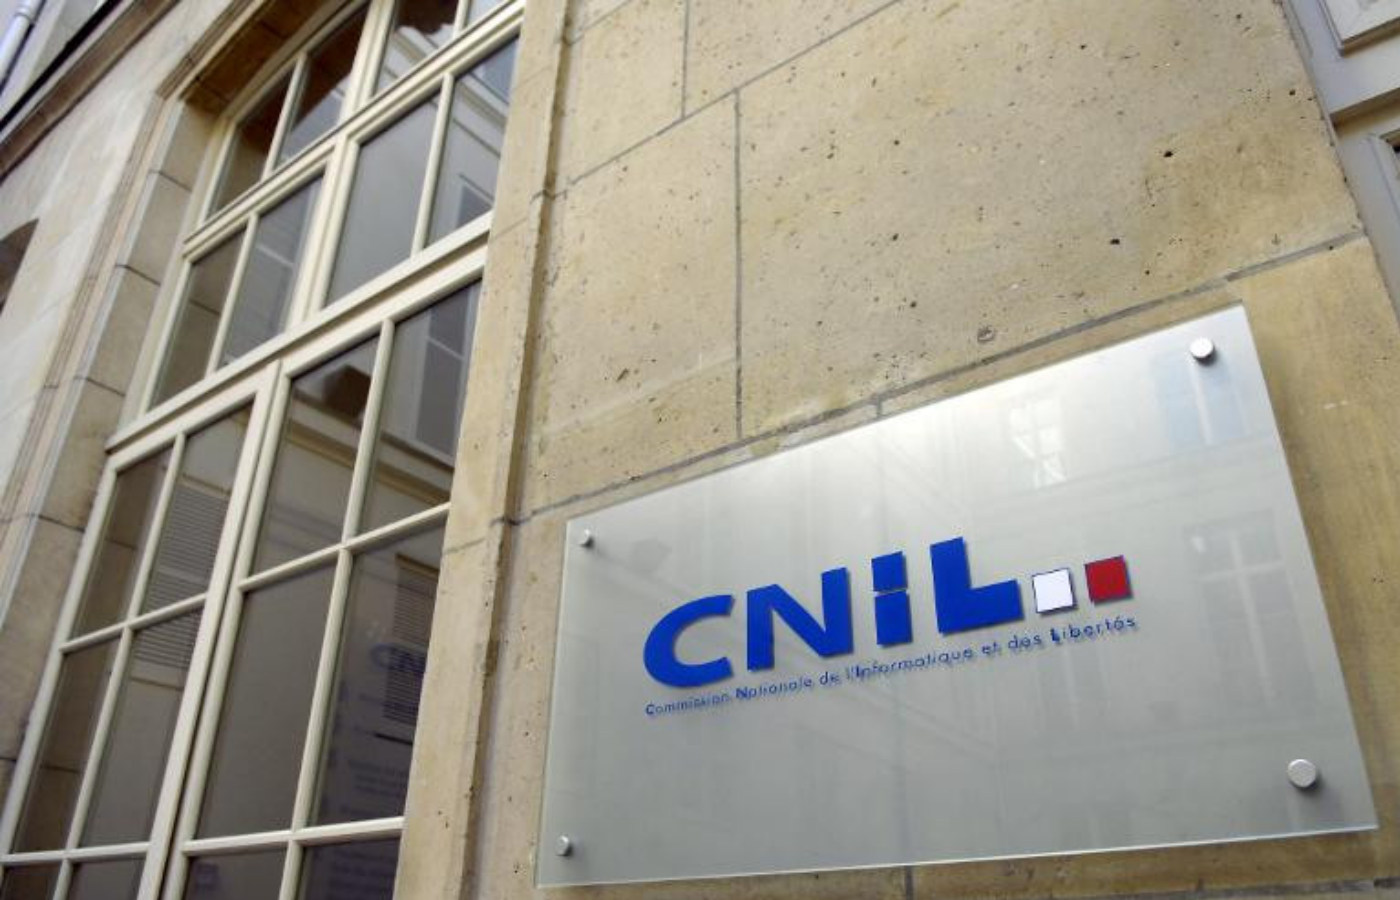 La CNIL enchaine des amendes express contre des sociétés qui videosurveillent ou geolocalisent leurs salariés